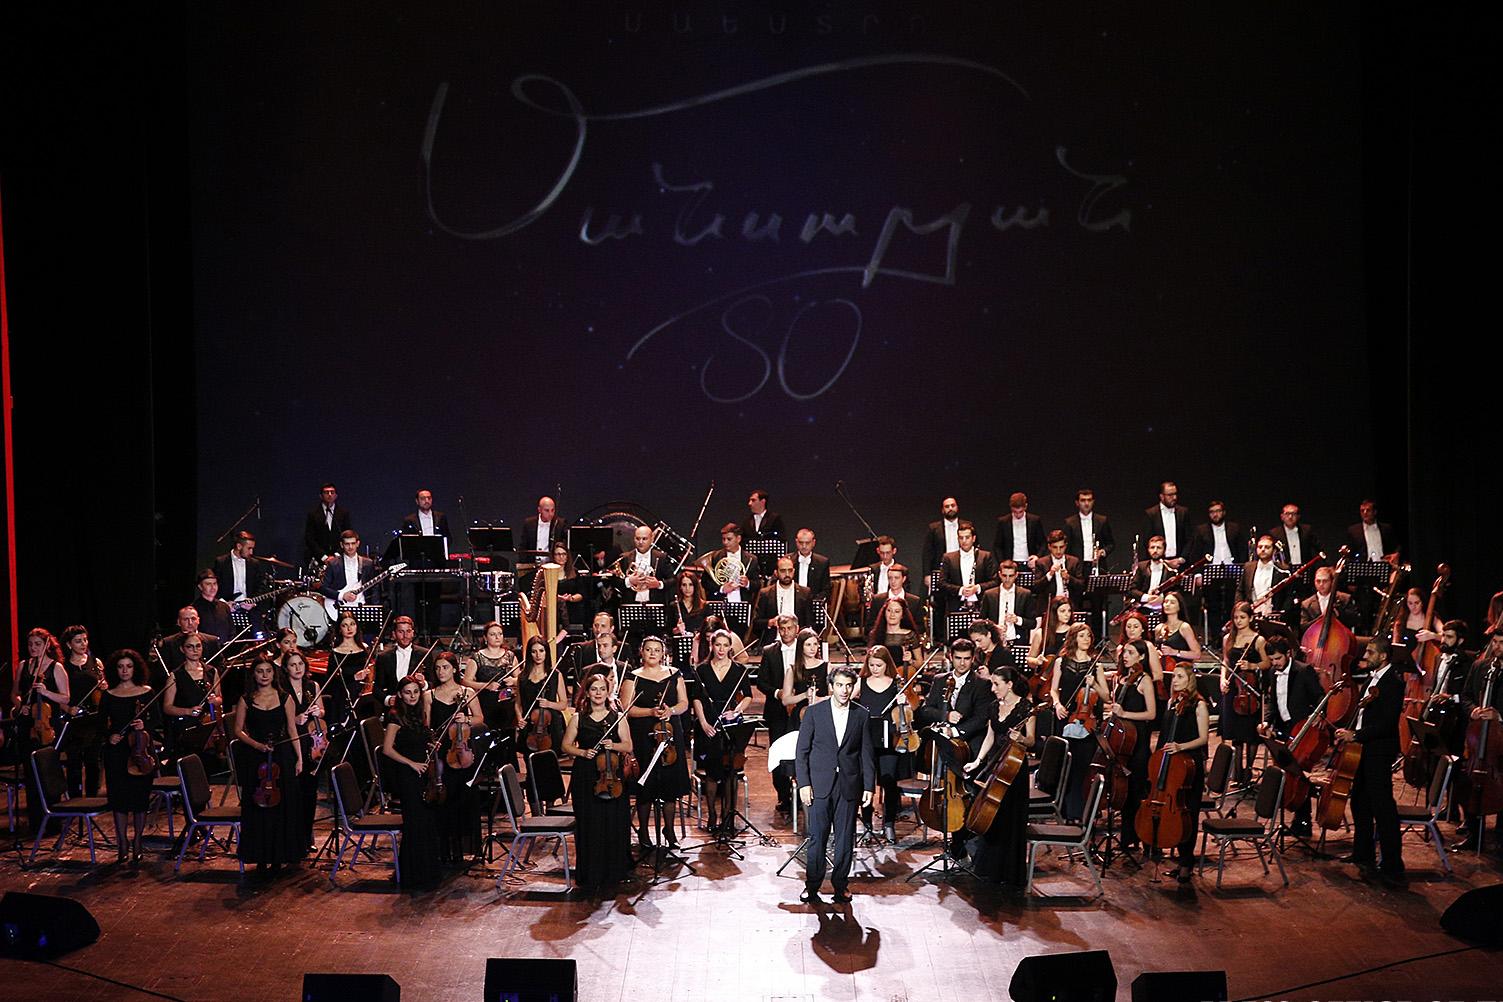 Սիմֆոնիկ նվագախումբը առաջին անգամ Երևանում նոր գործիքավորմամբ ներկայացրեց Մանսուրյանի կինոերաժշտությունը